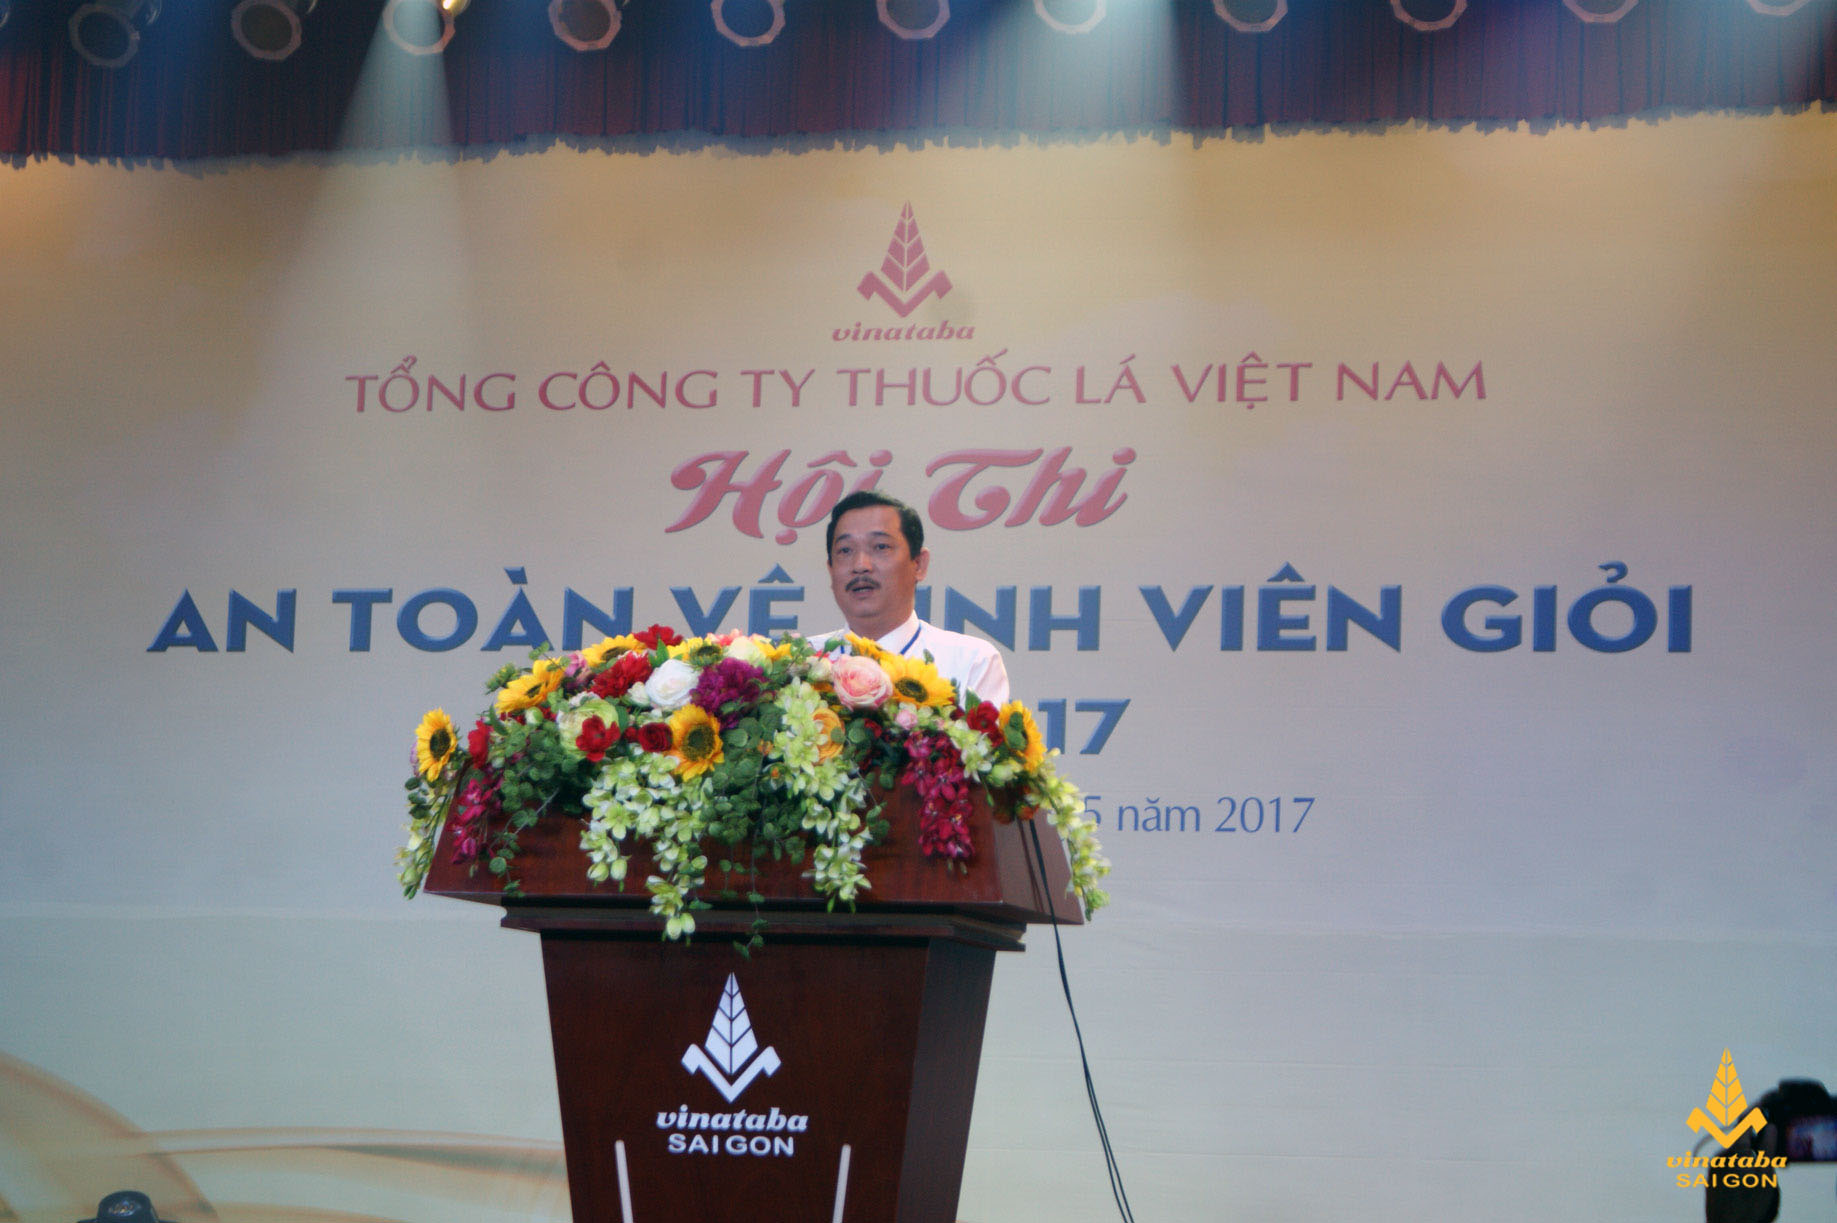 Ông Hồ Kỳ Quốc Hùng – Chủ tịch Công đoàn Tổng Công ty Thuốc lá Việt Nam  phát biểu khai mạc hội thi